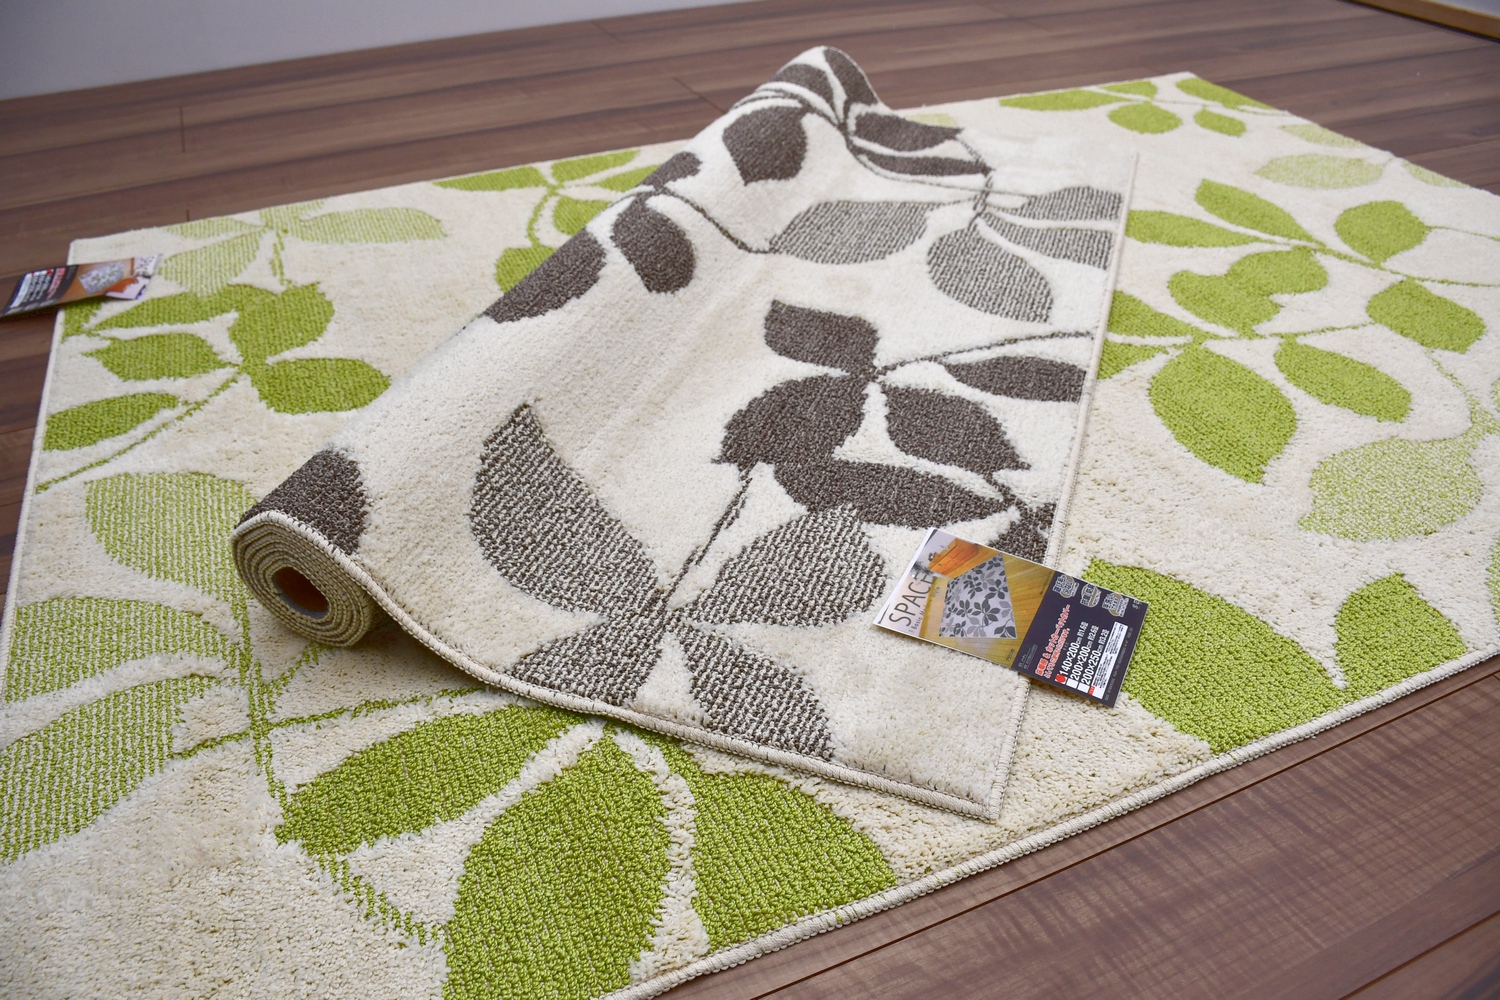 ラグ 北欧 おしゃれ 2畳 200×200 カーペット 絨毯 ラグマット ブラウン グリーン 緑 リーフ 2帖 安い 激安 正方形 通販 掃除